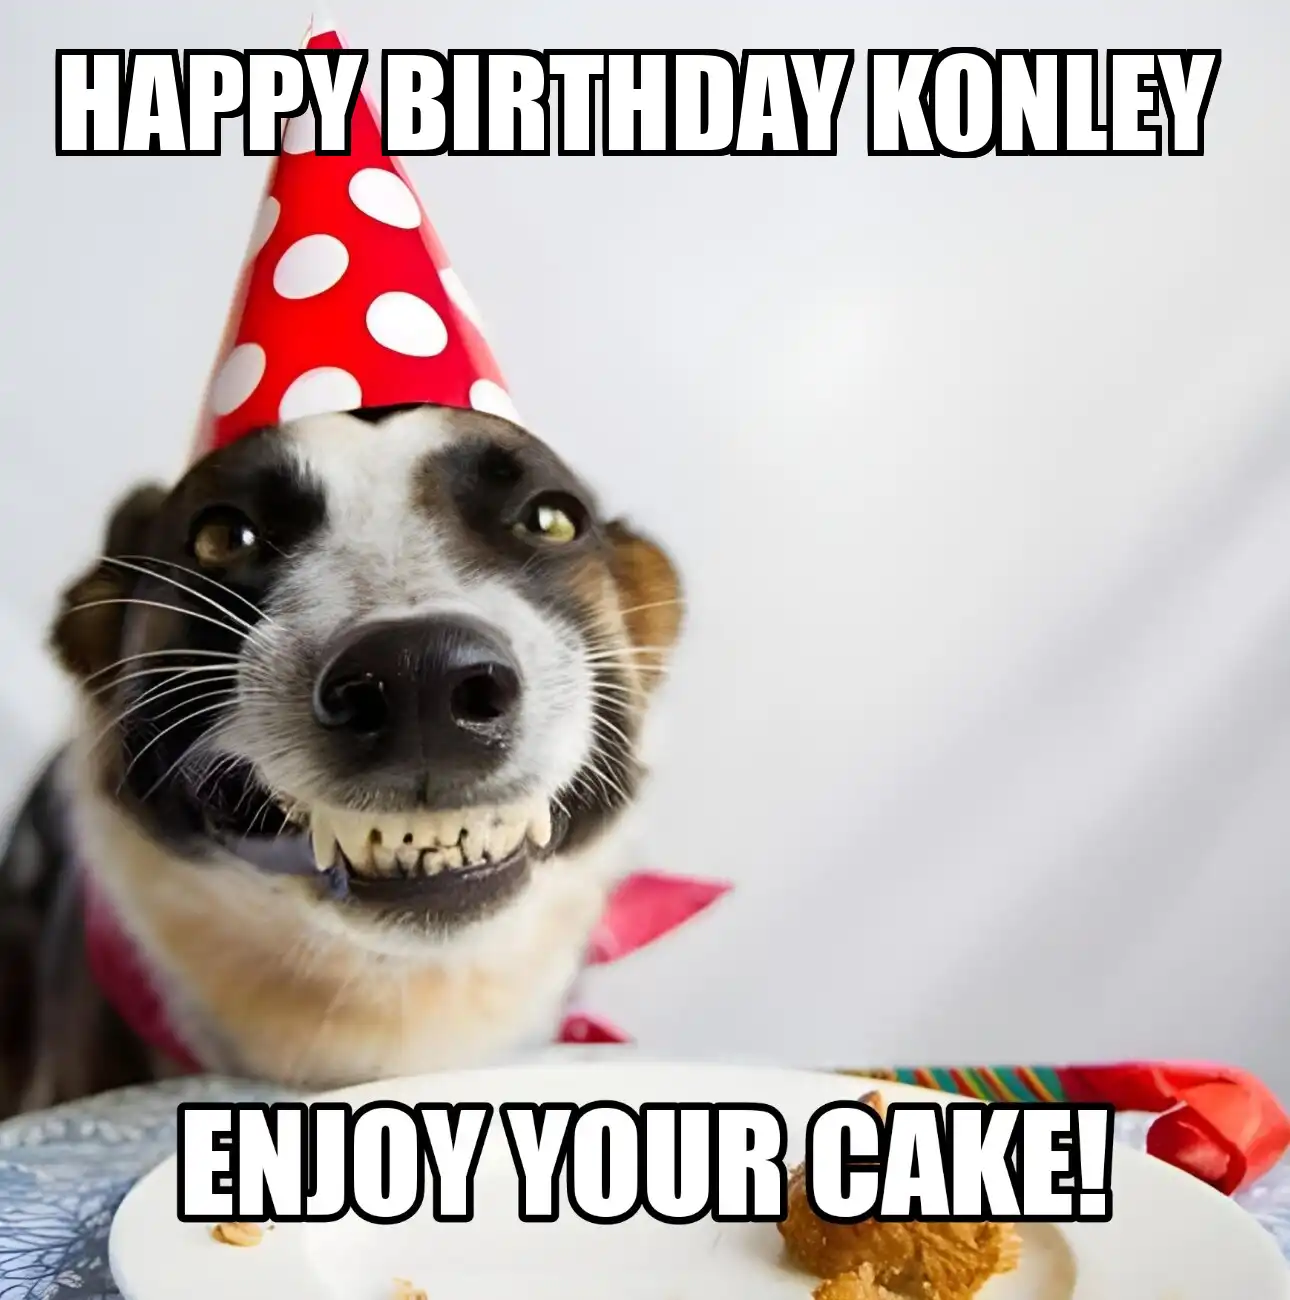 Happy Birthday Konley Enjoy Your Cake Dog Meme